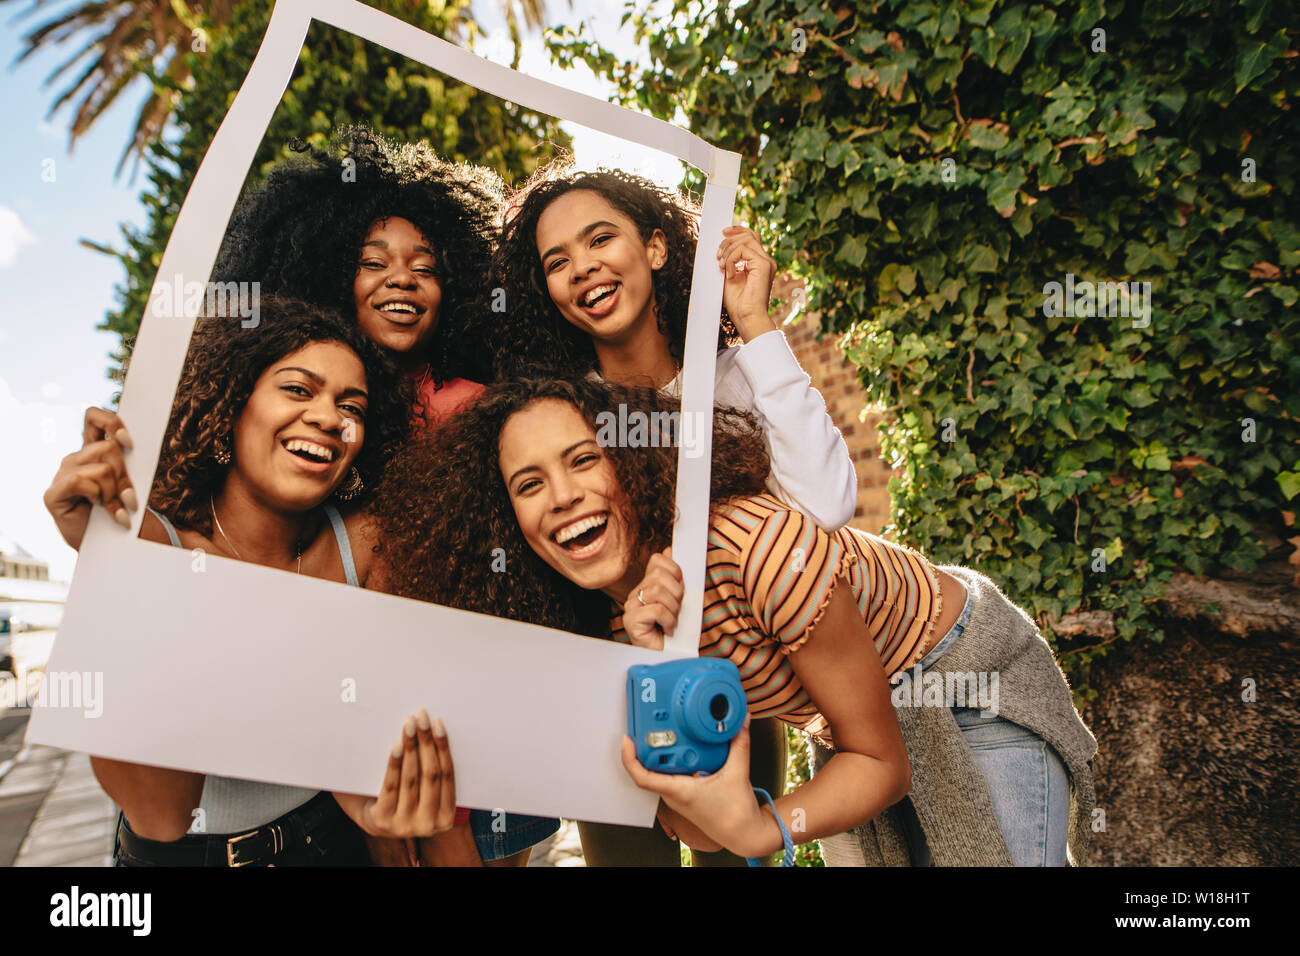 Un gruppo di giovani amici di sesso femminile in posa con vuoto cornice immagine. Ragazze sorridenti con vuoto photo frame all'aperto nella città. Foto Stock